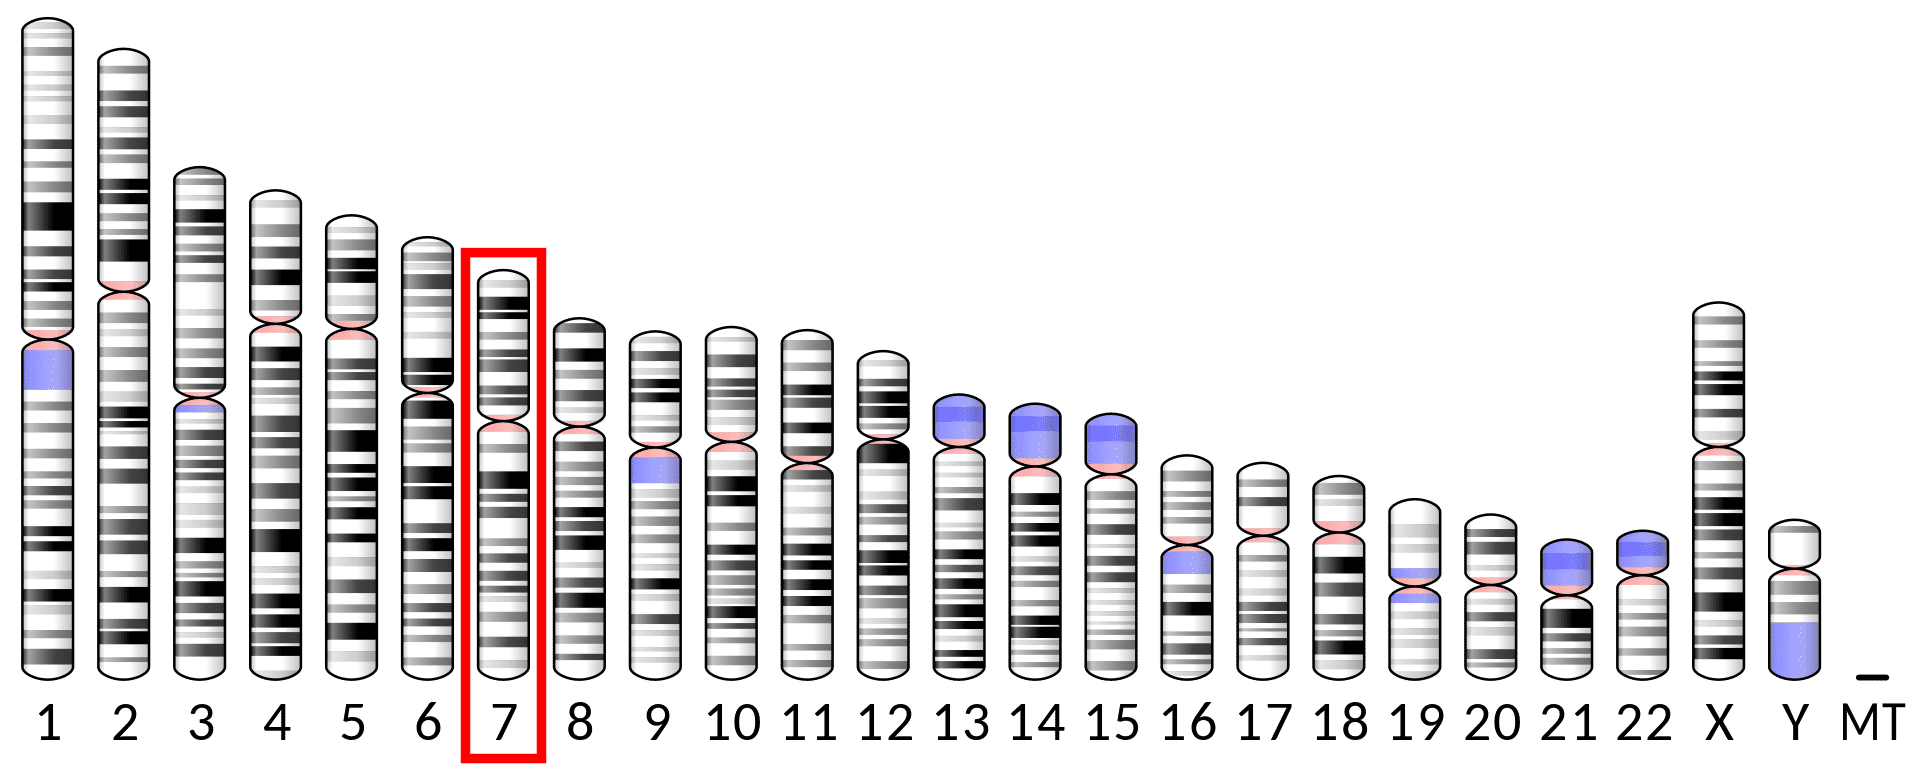 IL-6染色体编码位置